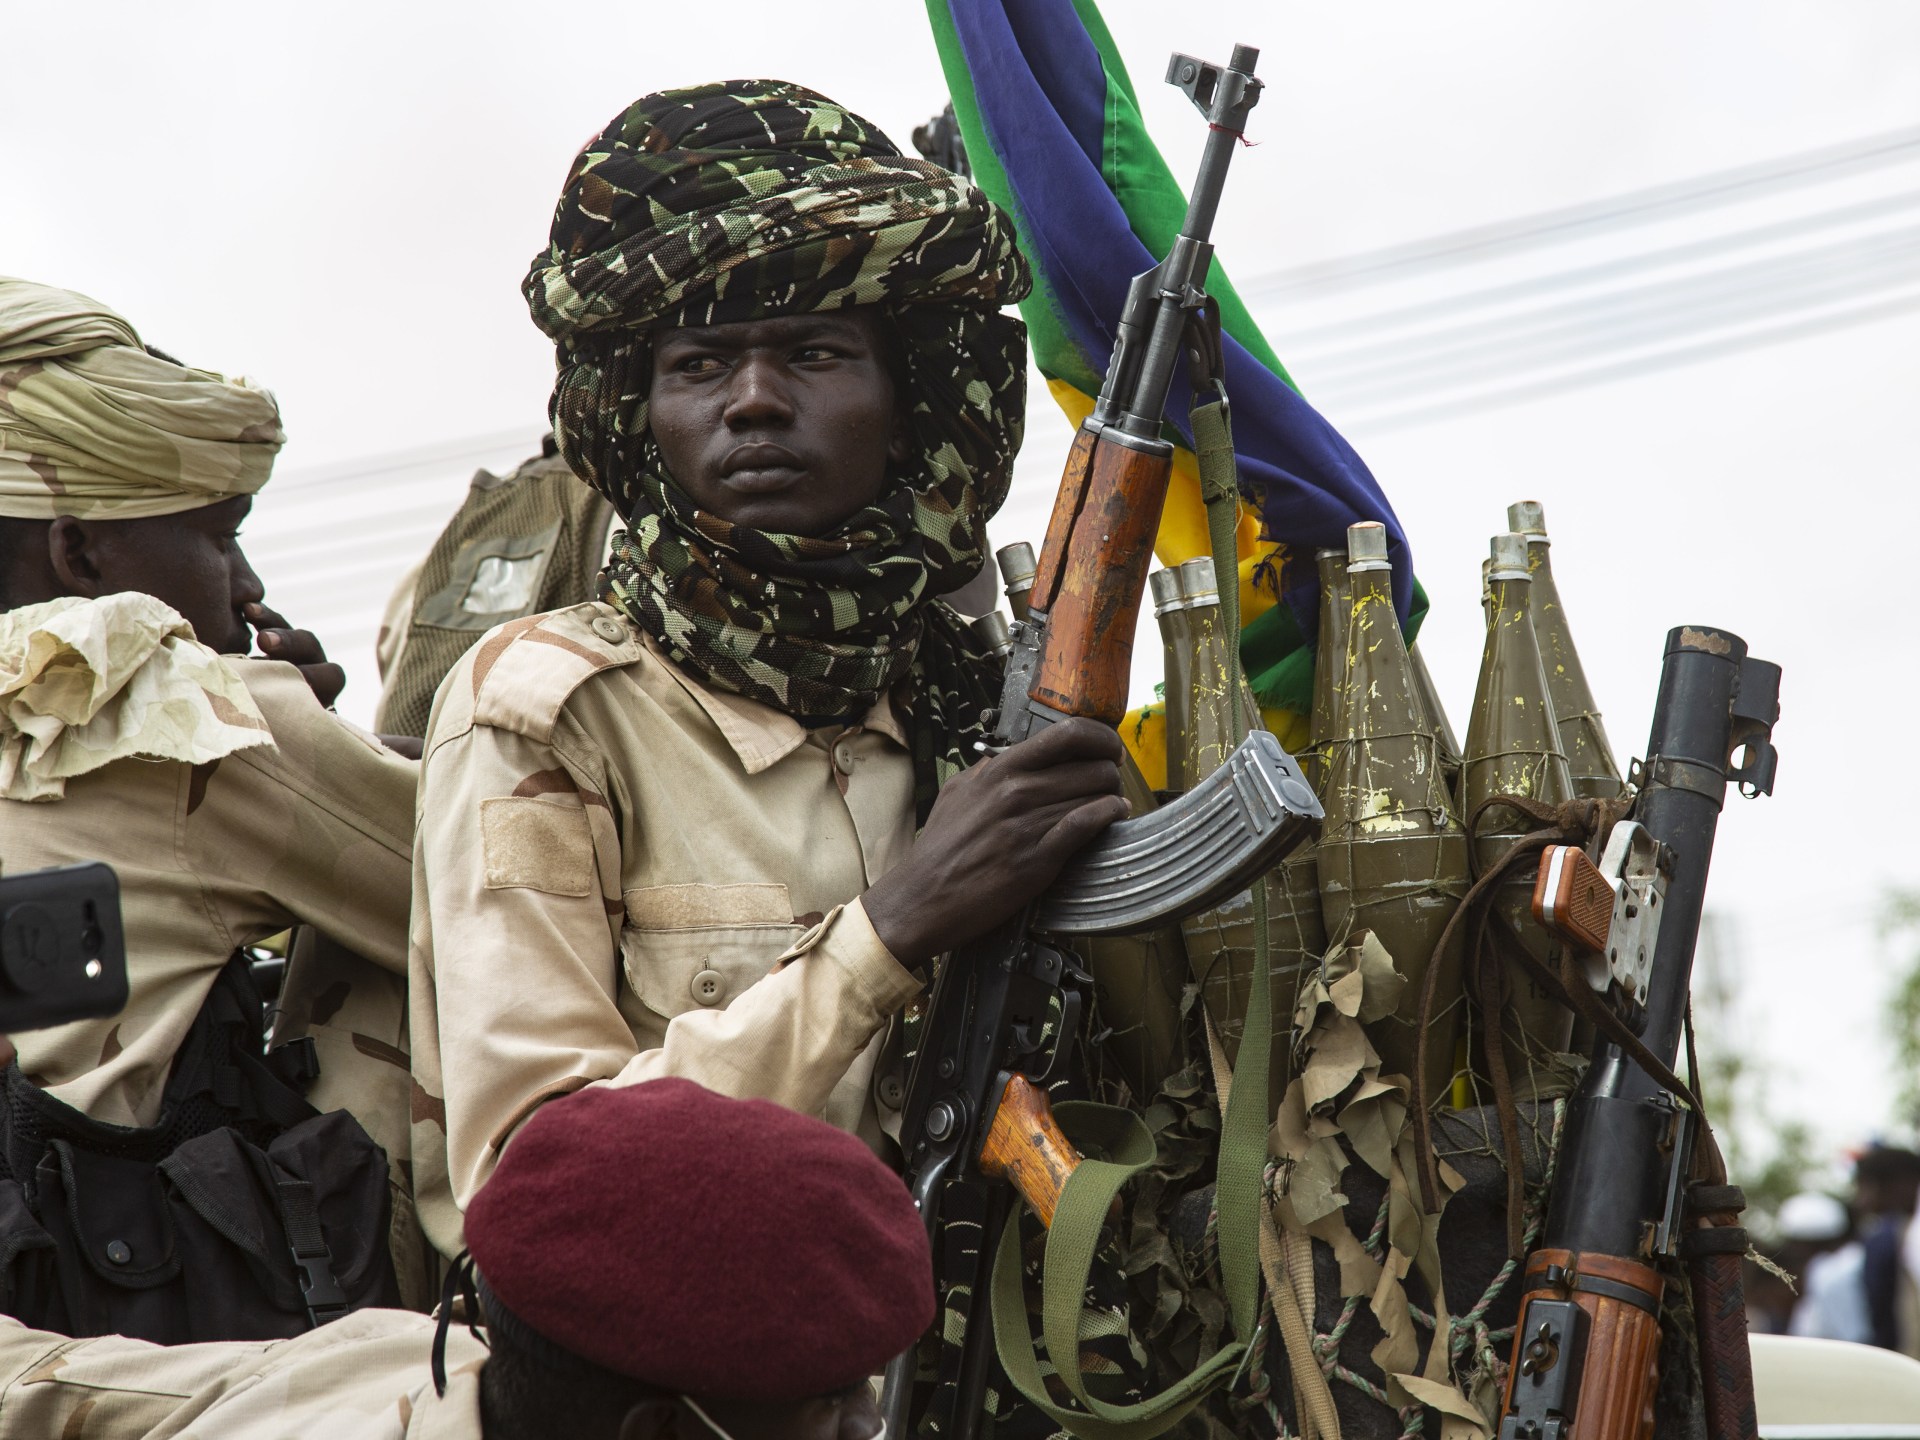 حركة تحرير السودان تترك الحياد وتنضم للقتال إلى جانب الجيش | أخبار – البوكس نيوز